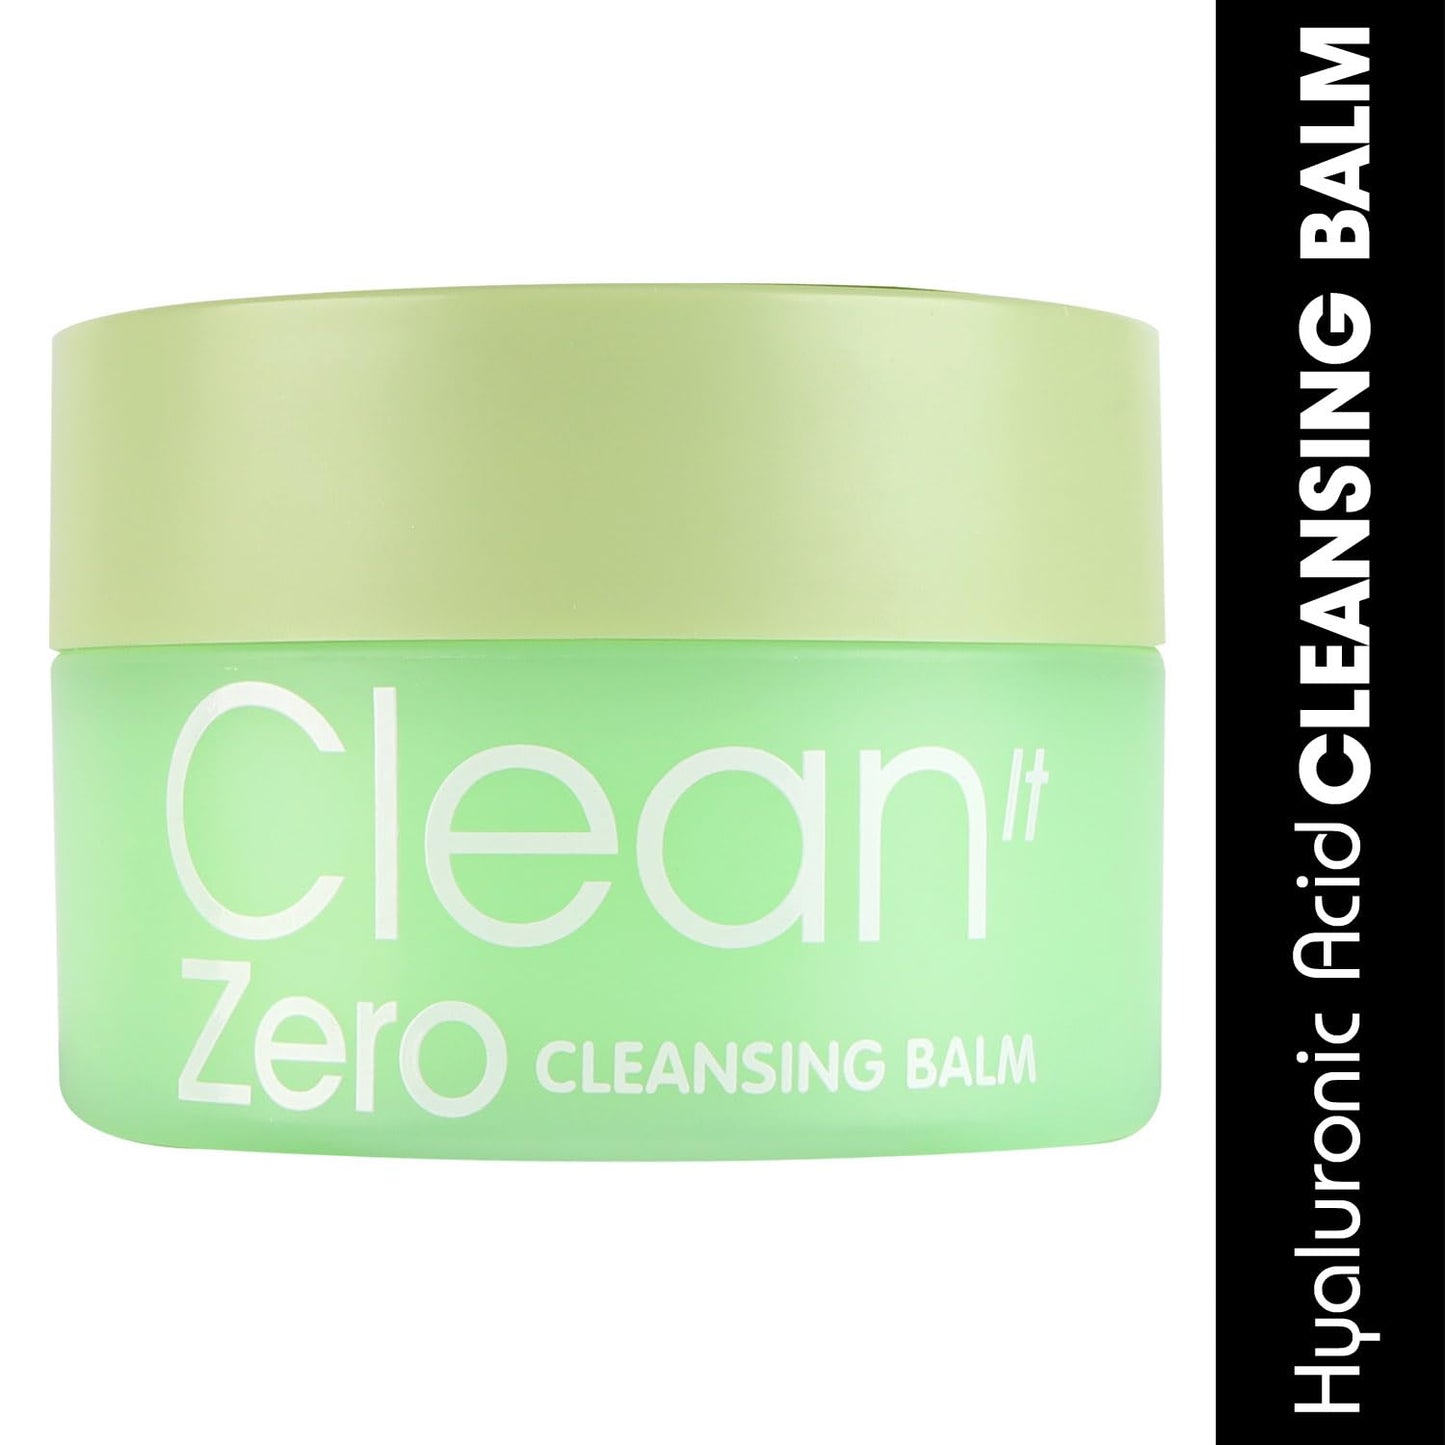 Fashion Colour Clean It Zero Gentle Makeup Remover Balm, 100GM